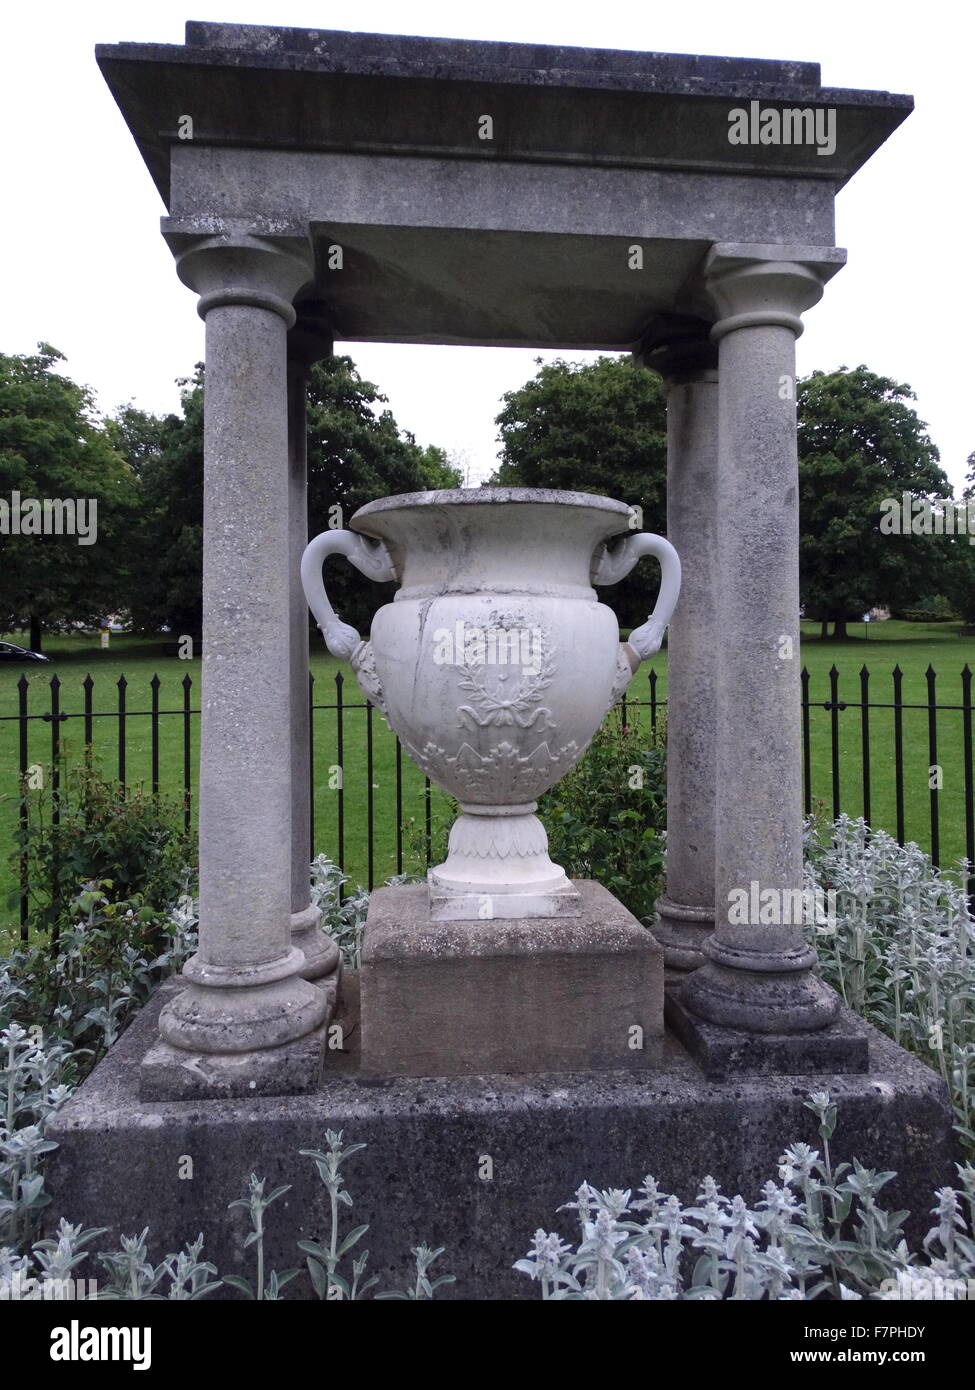 Alexandra Park aperto come un memoriale della incoronazione a. 1902. Il monumento al francese Imperatrice Josephine, 1805 ri-situato a Alexandra Park a Bath, Inghilterra. Il parco è stato inaugurato nel 1902 per commemorare l' incoronazione di Edoardo VII, e chiamato in onore della regina Alexandra Foto Stock